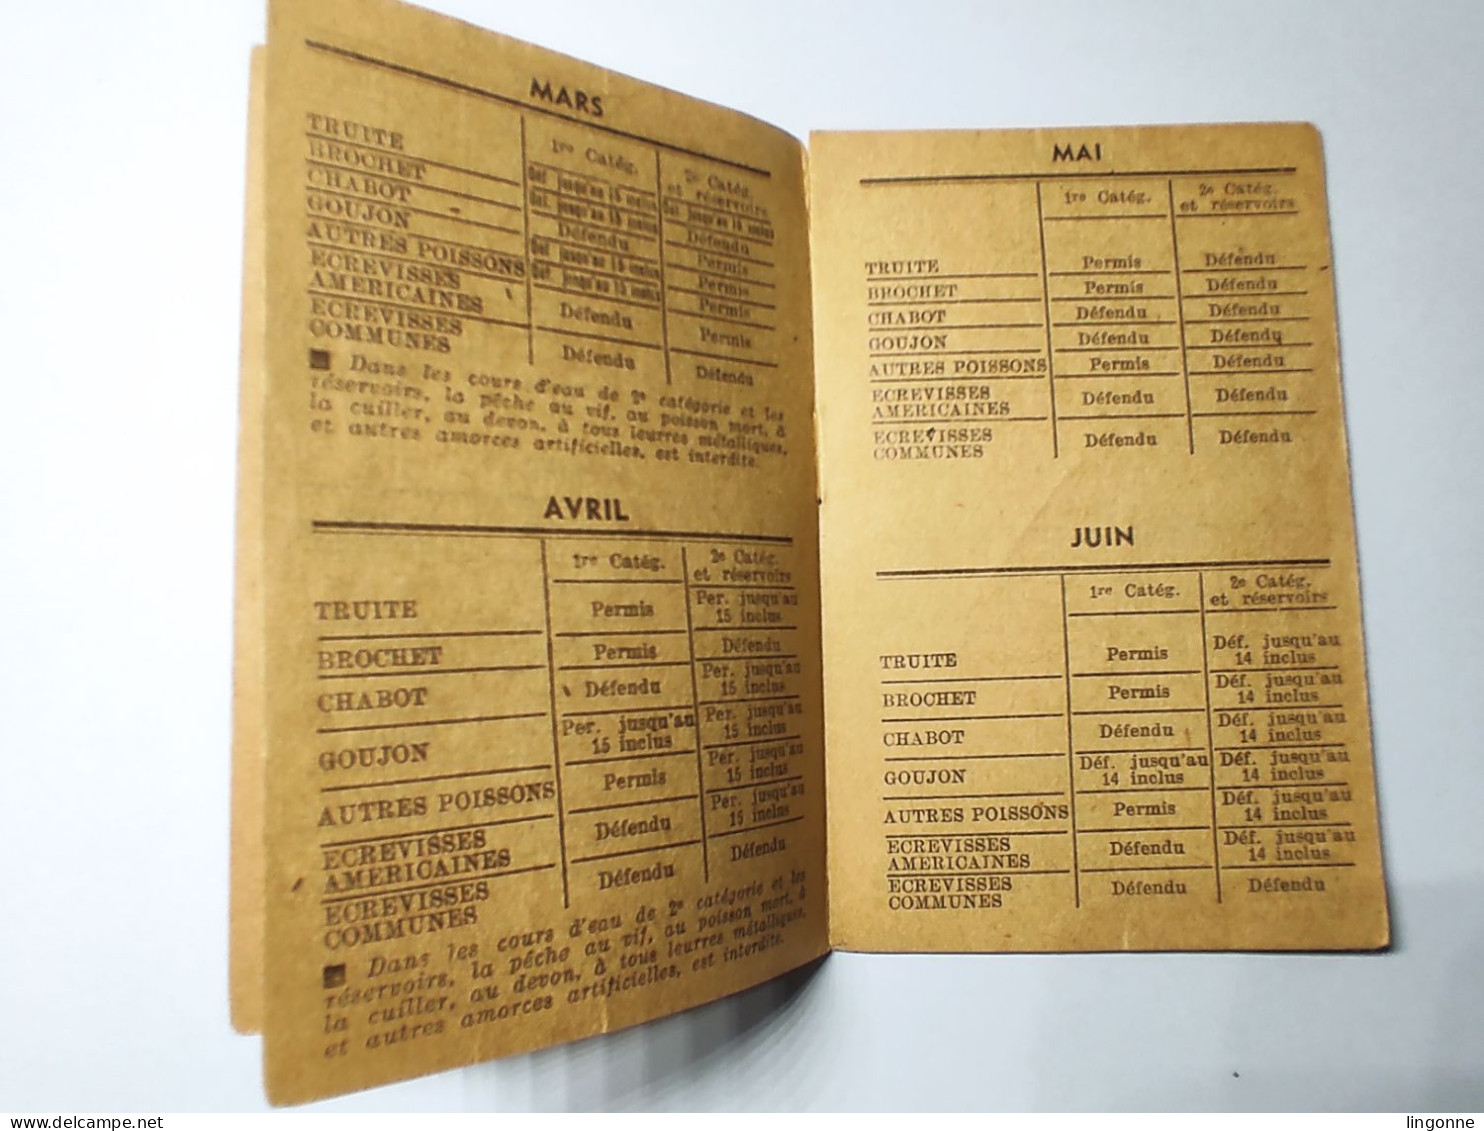 1963 Calendrier De La Pêche En Haute Marne 52 -  Classement Des Cours D'Eau, Poissons. Imp De L'EST CHAUMONT - Tamaño Pequeño : 1961-70